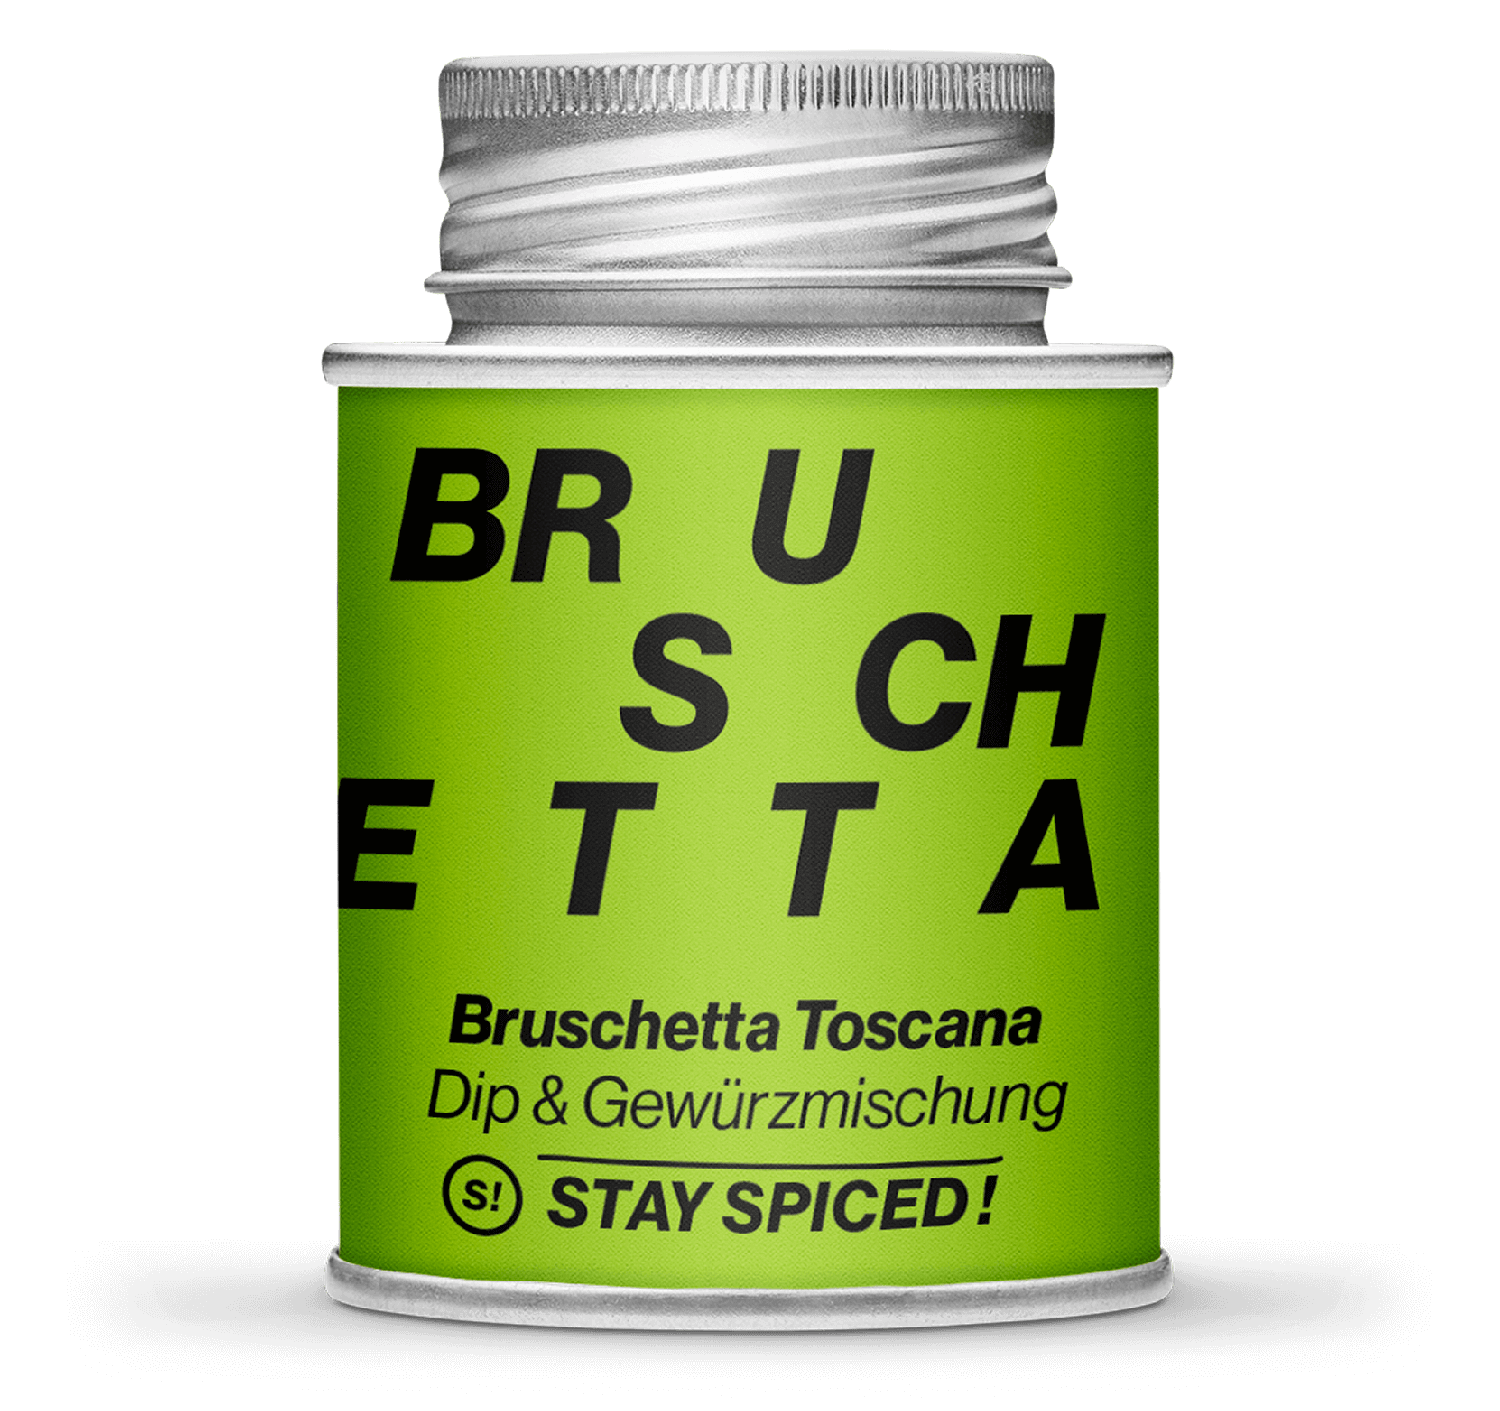 Stay Spiced - Dip- und Gewürzmischung - BRUSCHETTA TOSCANA